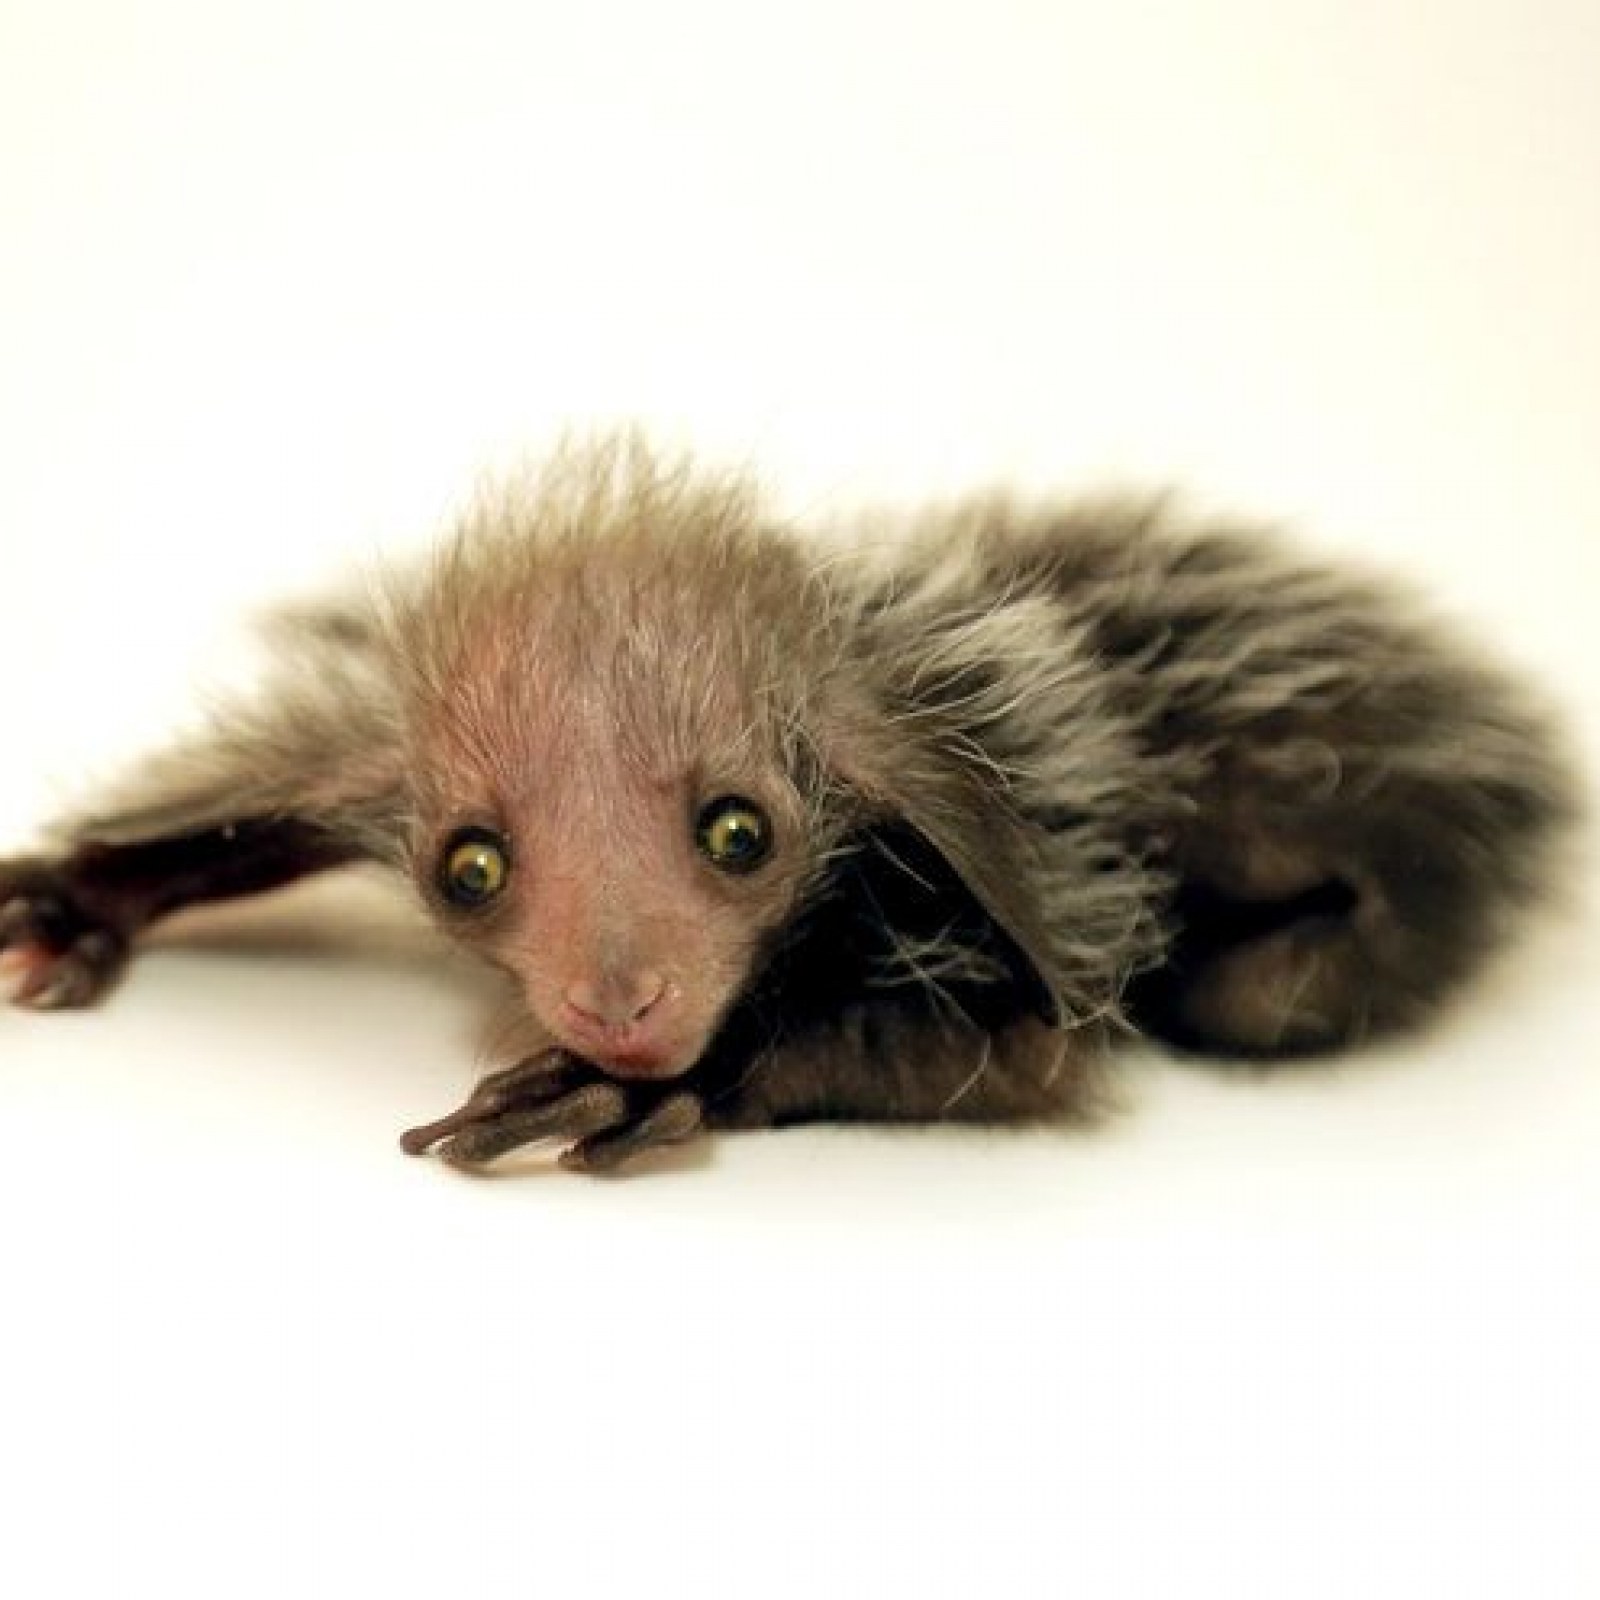 Ugliest Animal Ever? Denver Zoo's Newborn Endangered Aye-aye Lemur Prompts  Debate